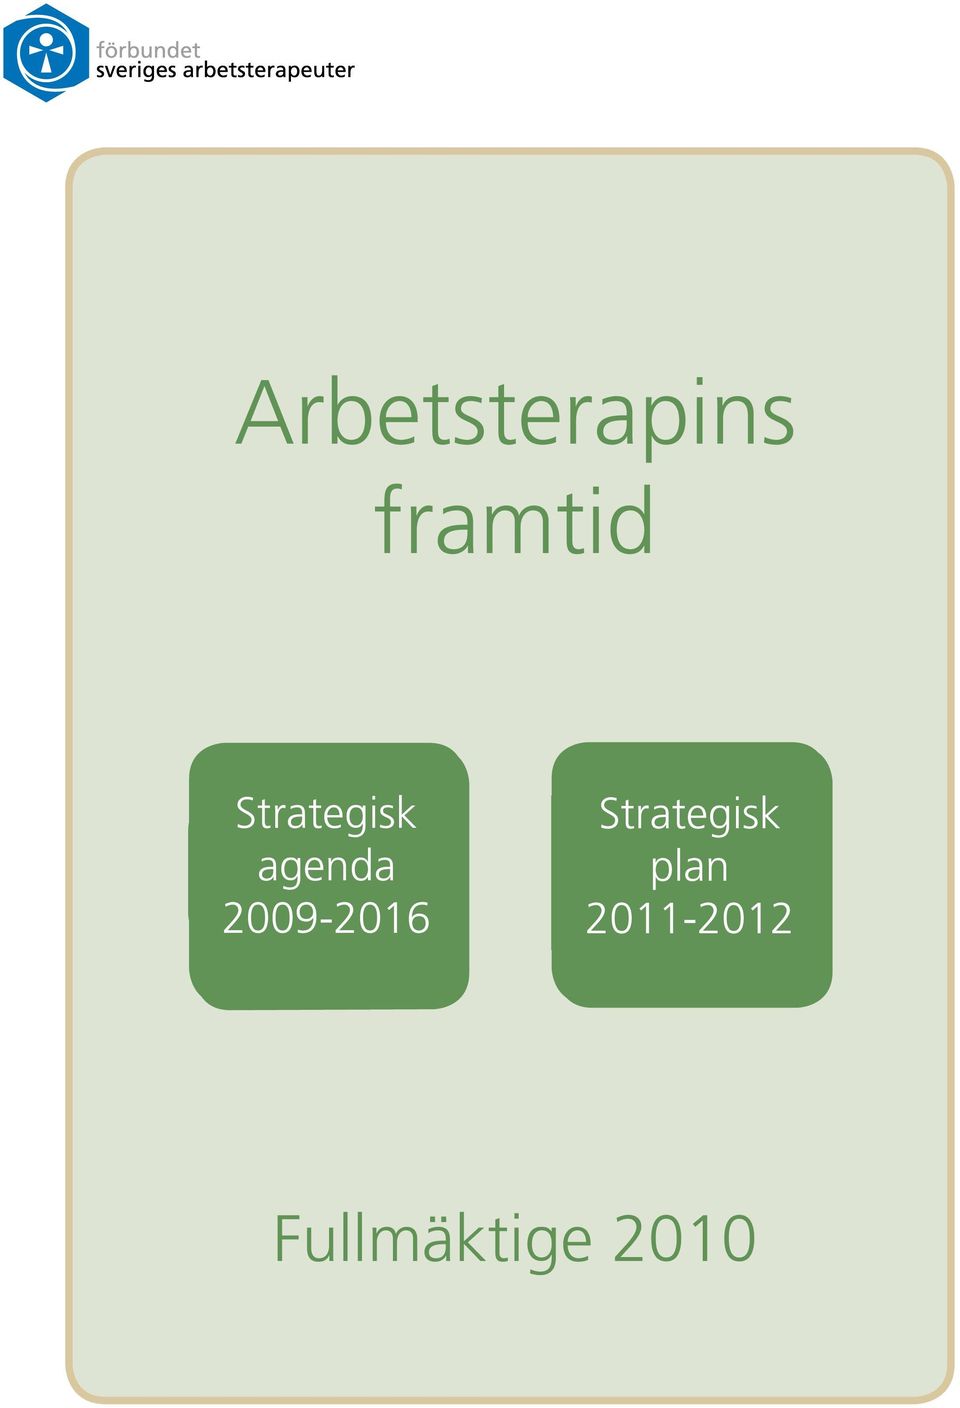 2009-2016 Strategisk